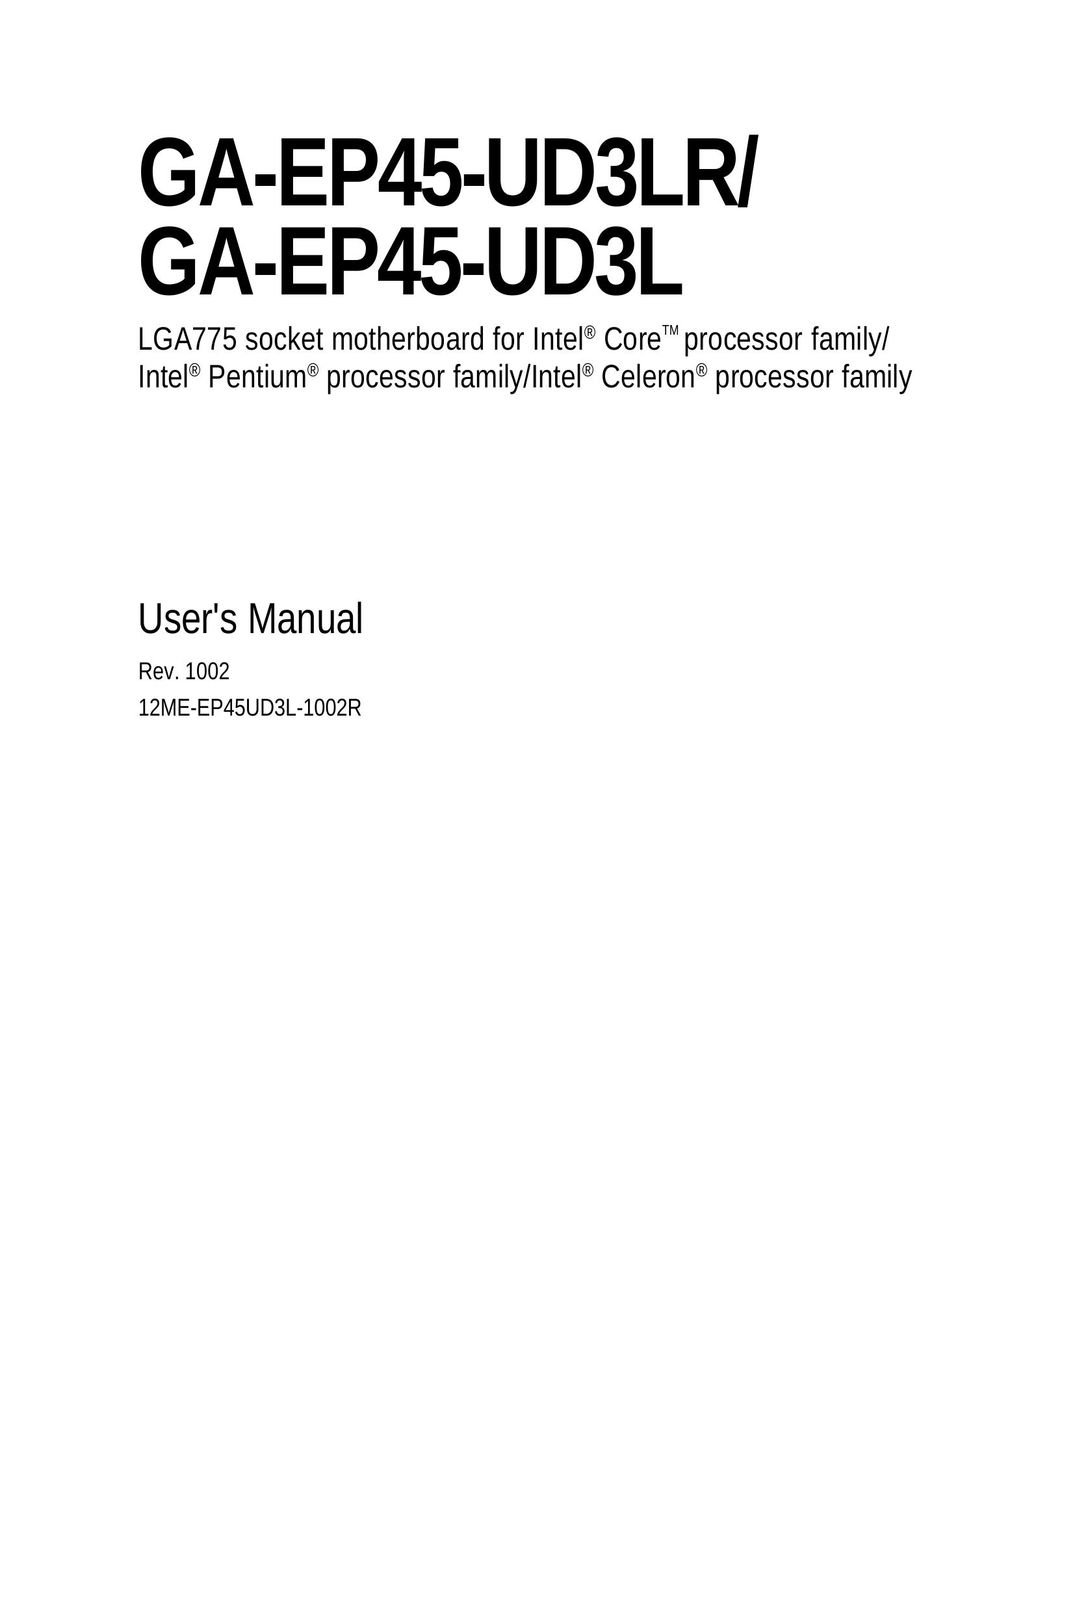 Gigabyte GA-EP45-UD3LR Computer Hardware User Manual